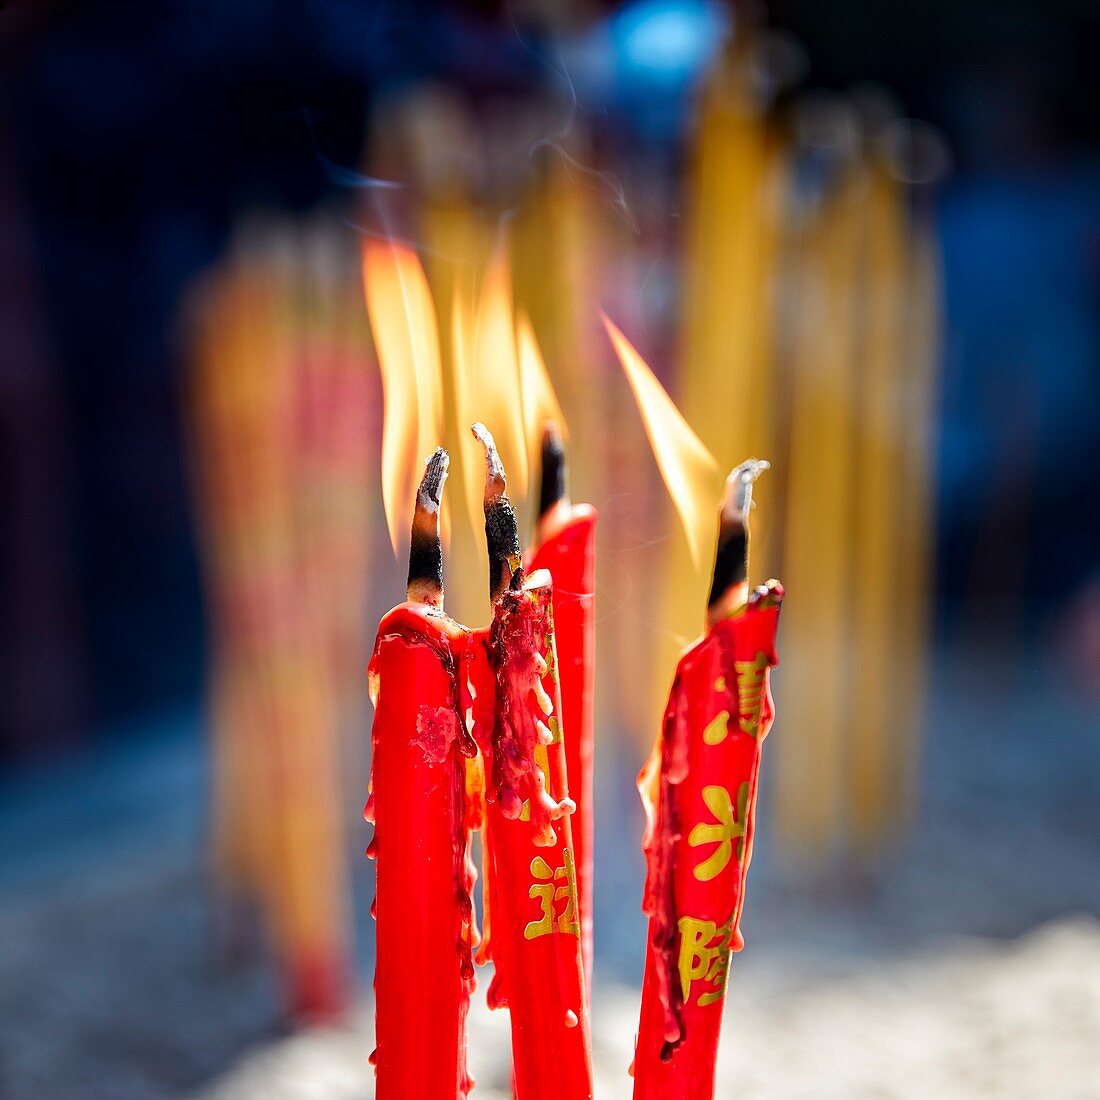 Brennende rote Kerzen im A-Ma-Tempel, Macau, China